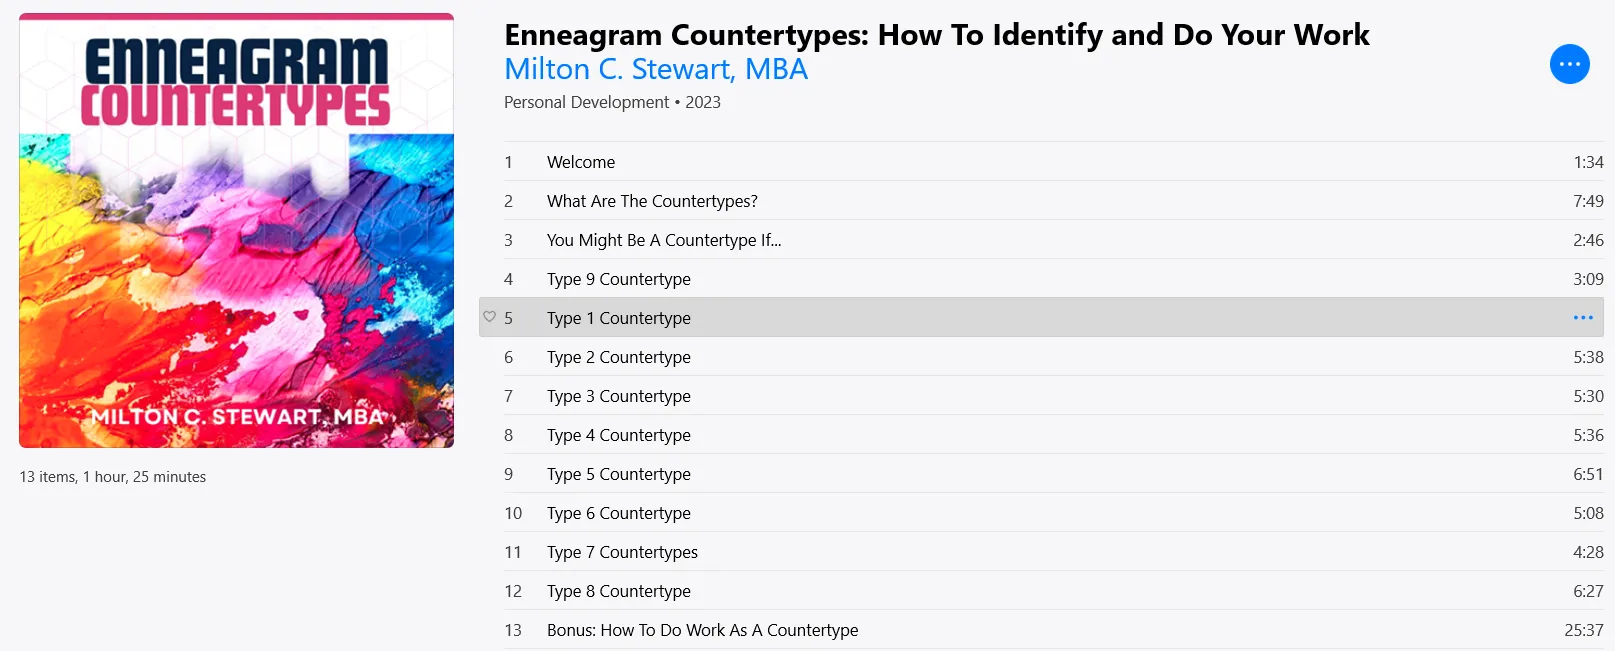 Enneagram Countertypes Bundle (Ebook + Audio booklet)